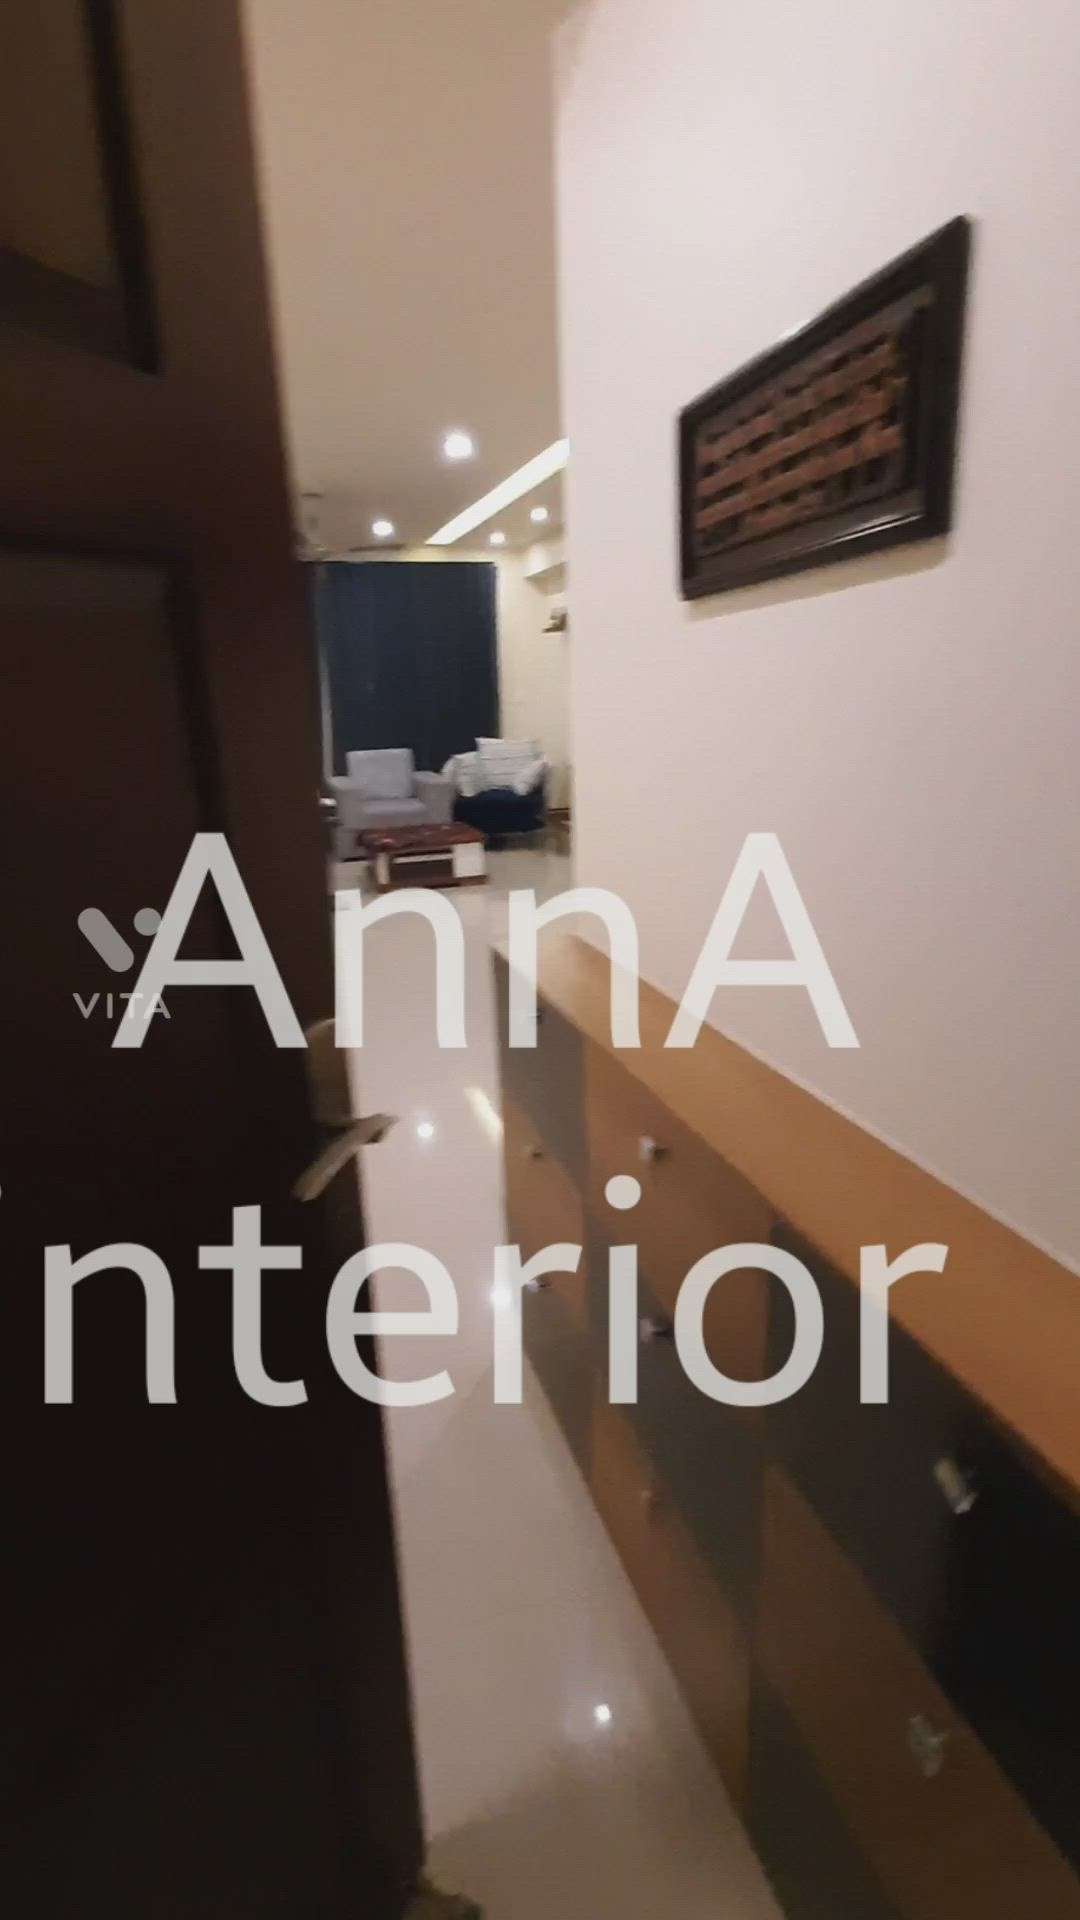 AnnA interior designing
8111804417